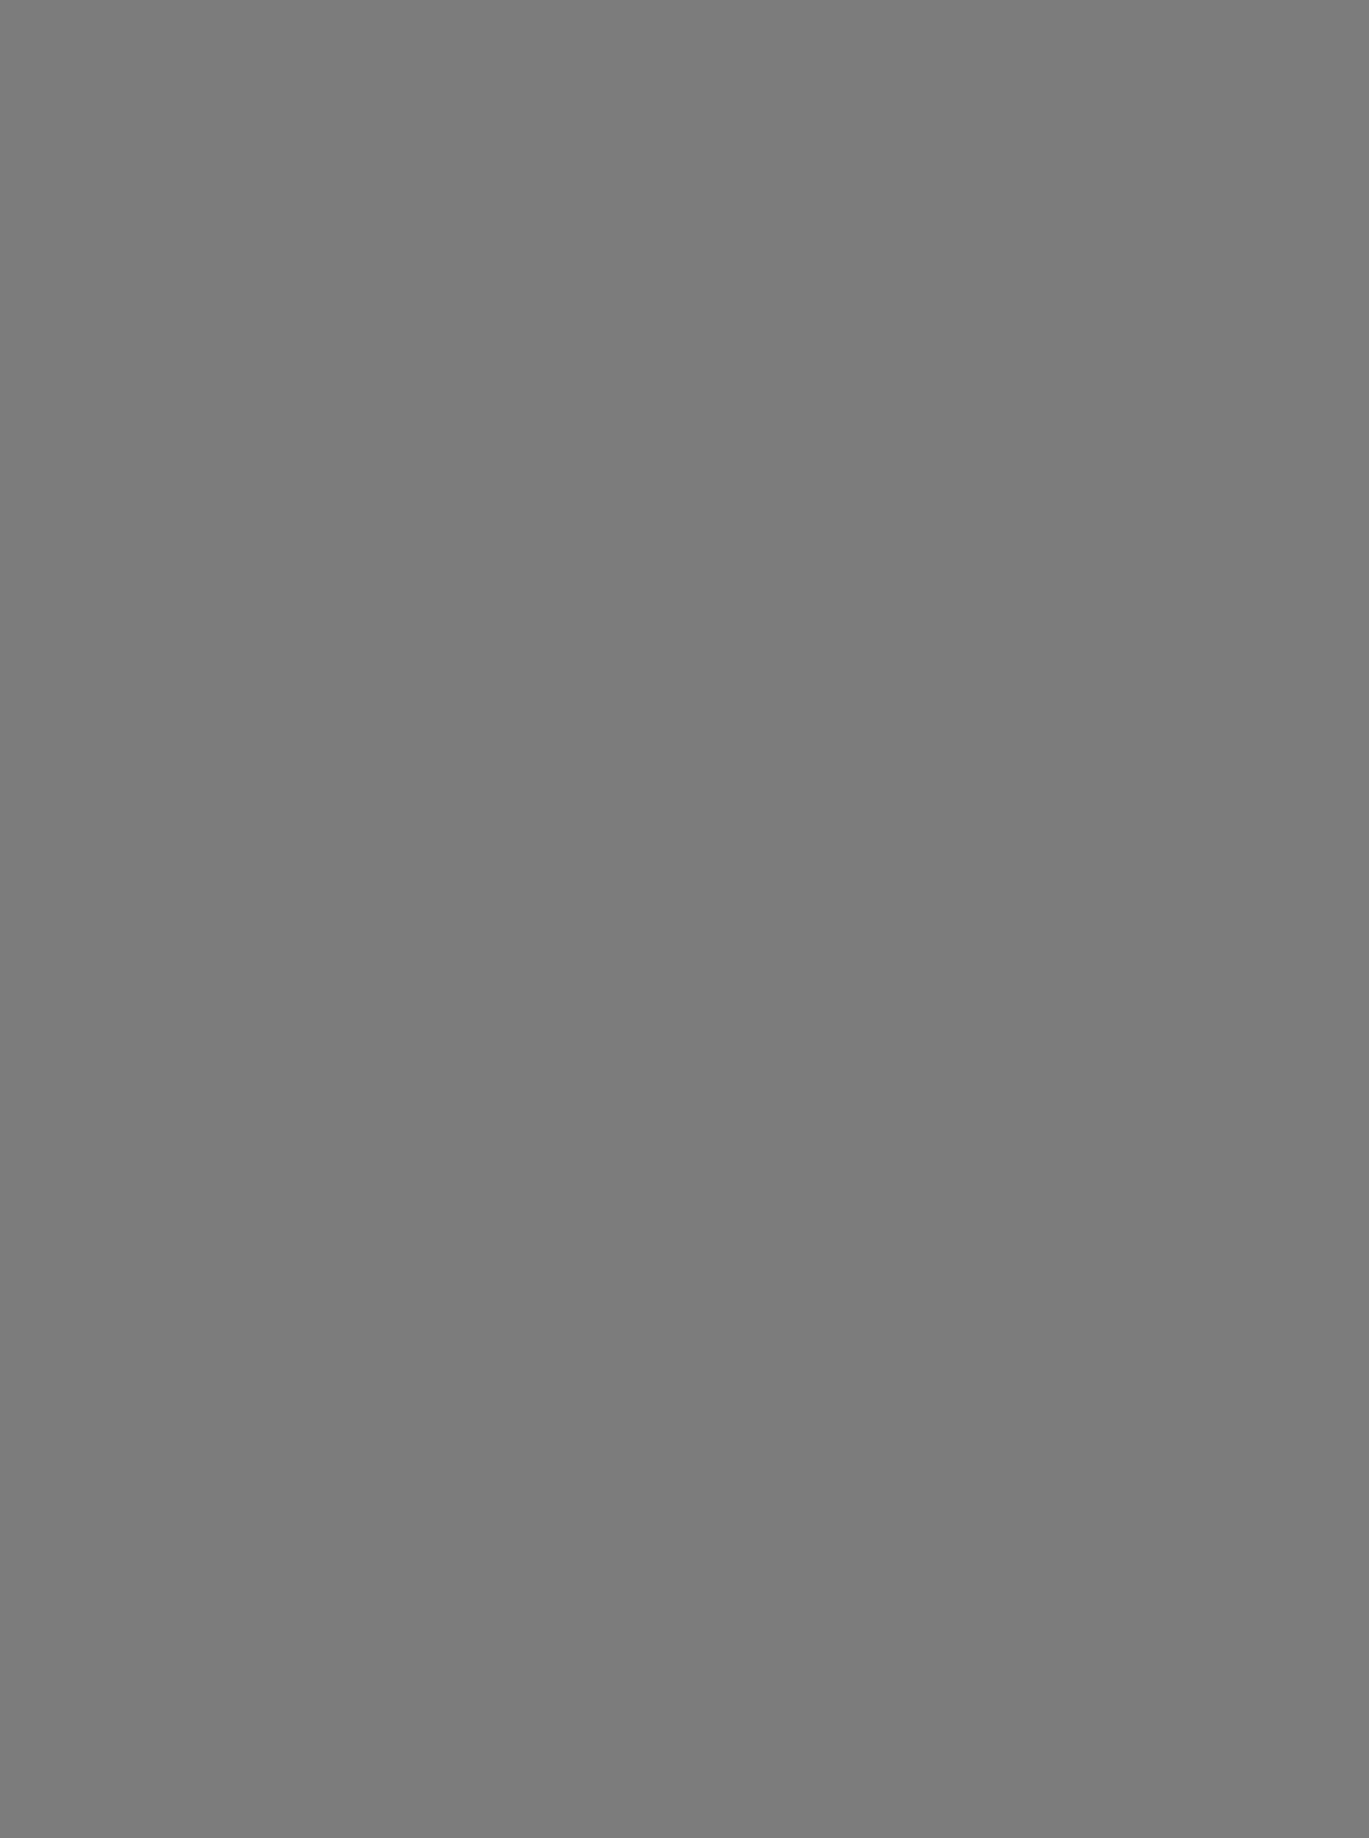 Евгений Вахтангов в роли Тэкльтона в спектакле «Сверчок на печи». 1914 год. 1-я студия Московского Художественного театра. Фотография: wikimedia.org